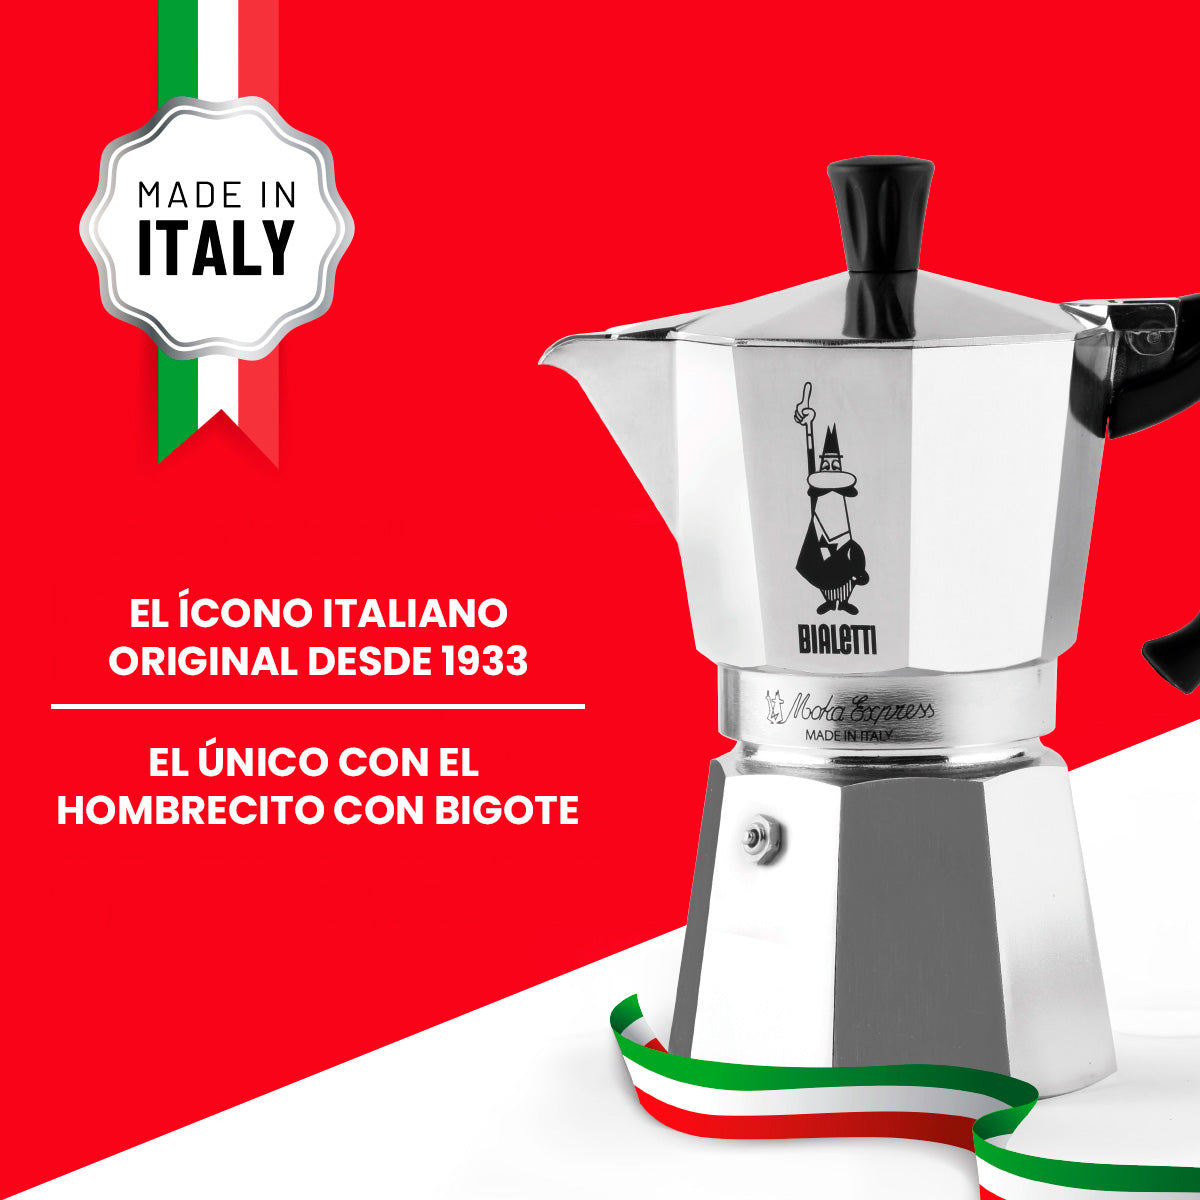 Descubre la tradición italiana del café con la Cafetera Bialetti Moka Express. Fabricada en Italia desde 1933, esta cafetera es un símbolo de calidad. Disponible en diferentes tamaños, se adapta a tu estilo de vida.